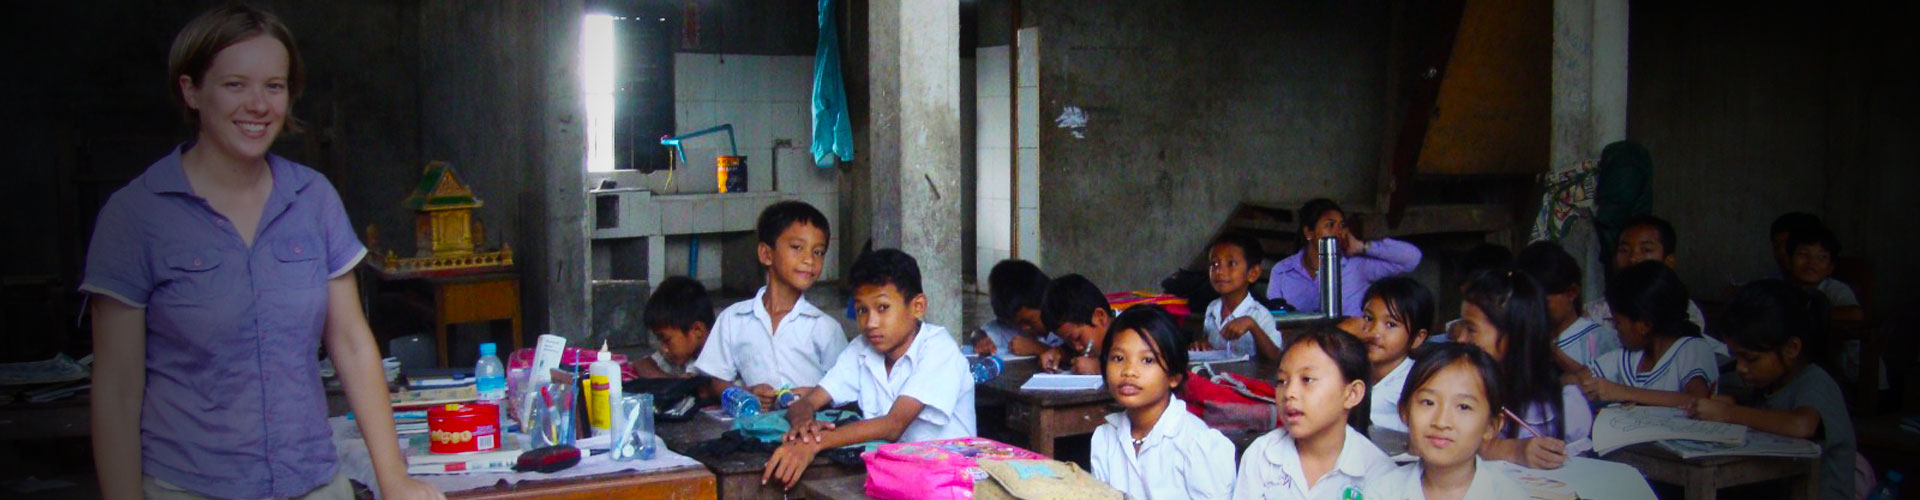 Programma di volontariato per l'insegnamento dell'inglese in Cambogia